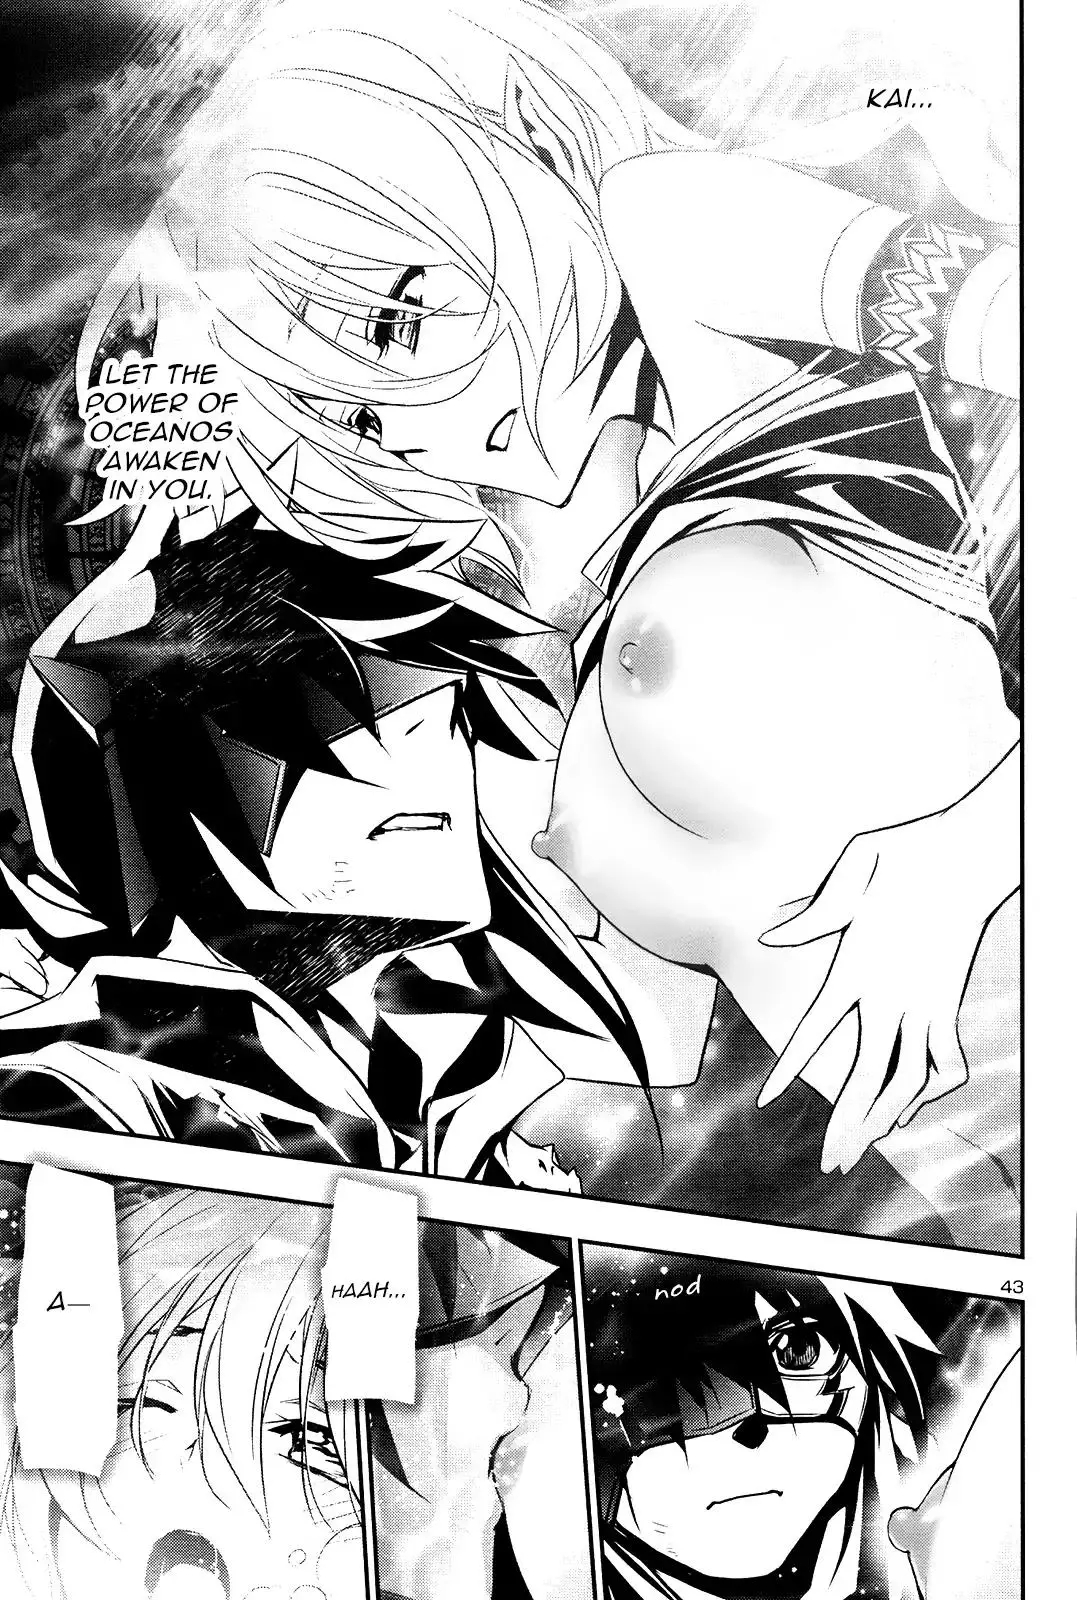 Shinju no Nectar - 19 page 41